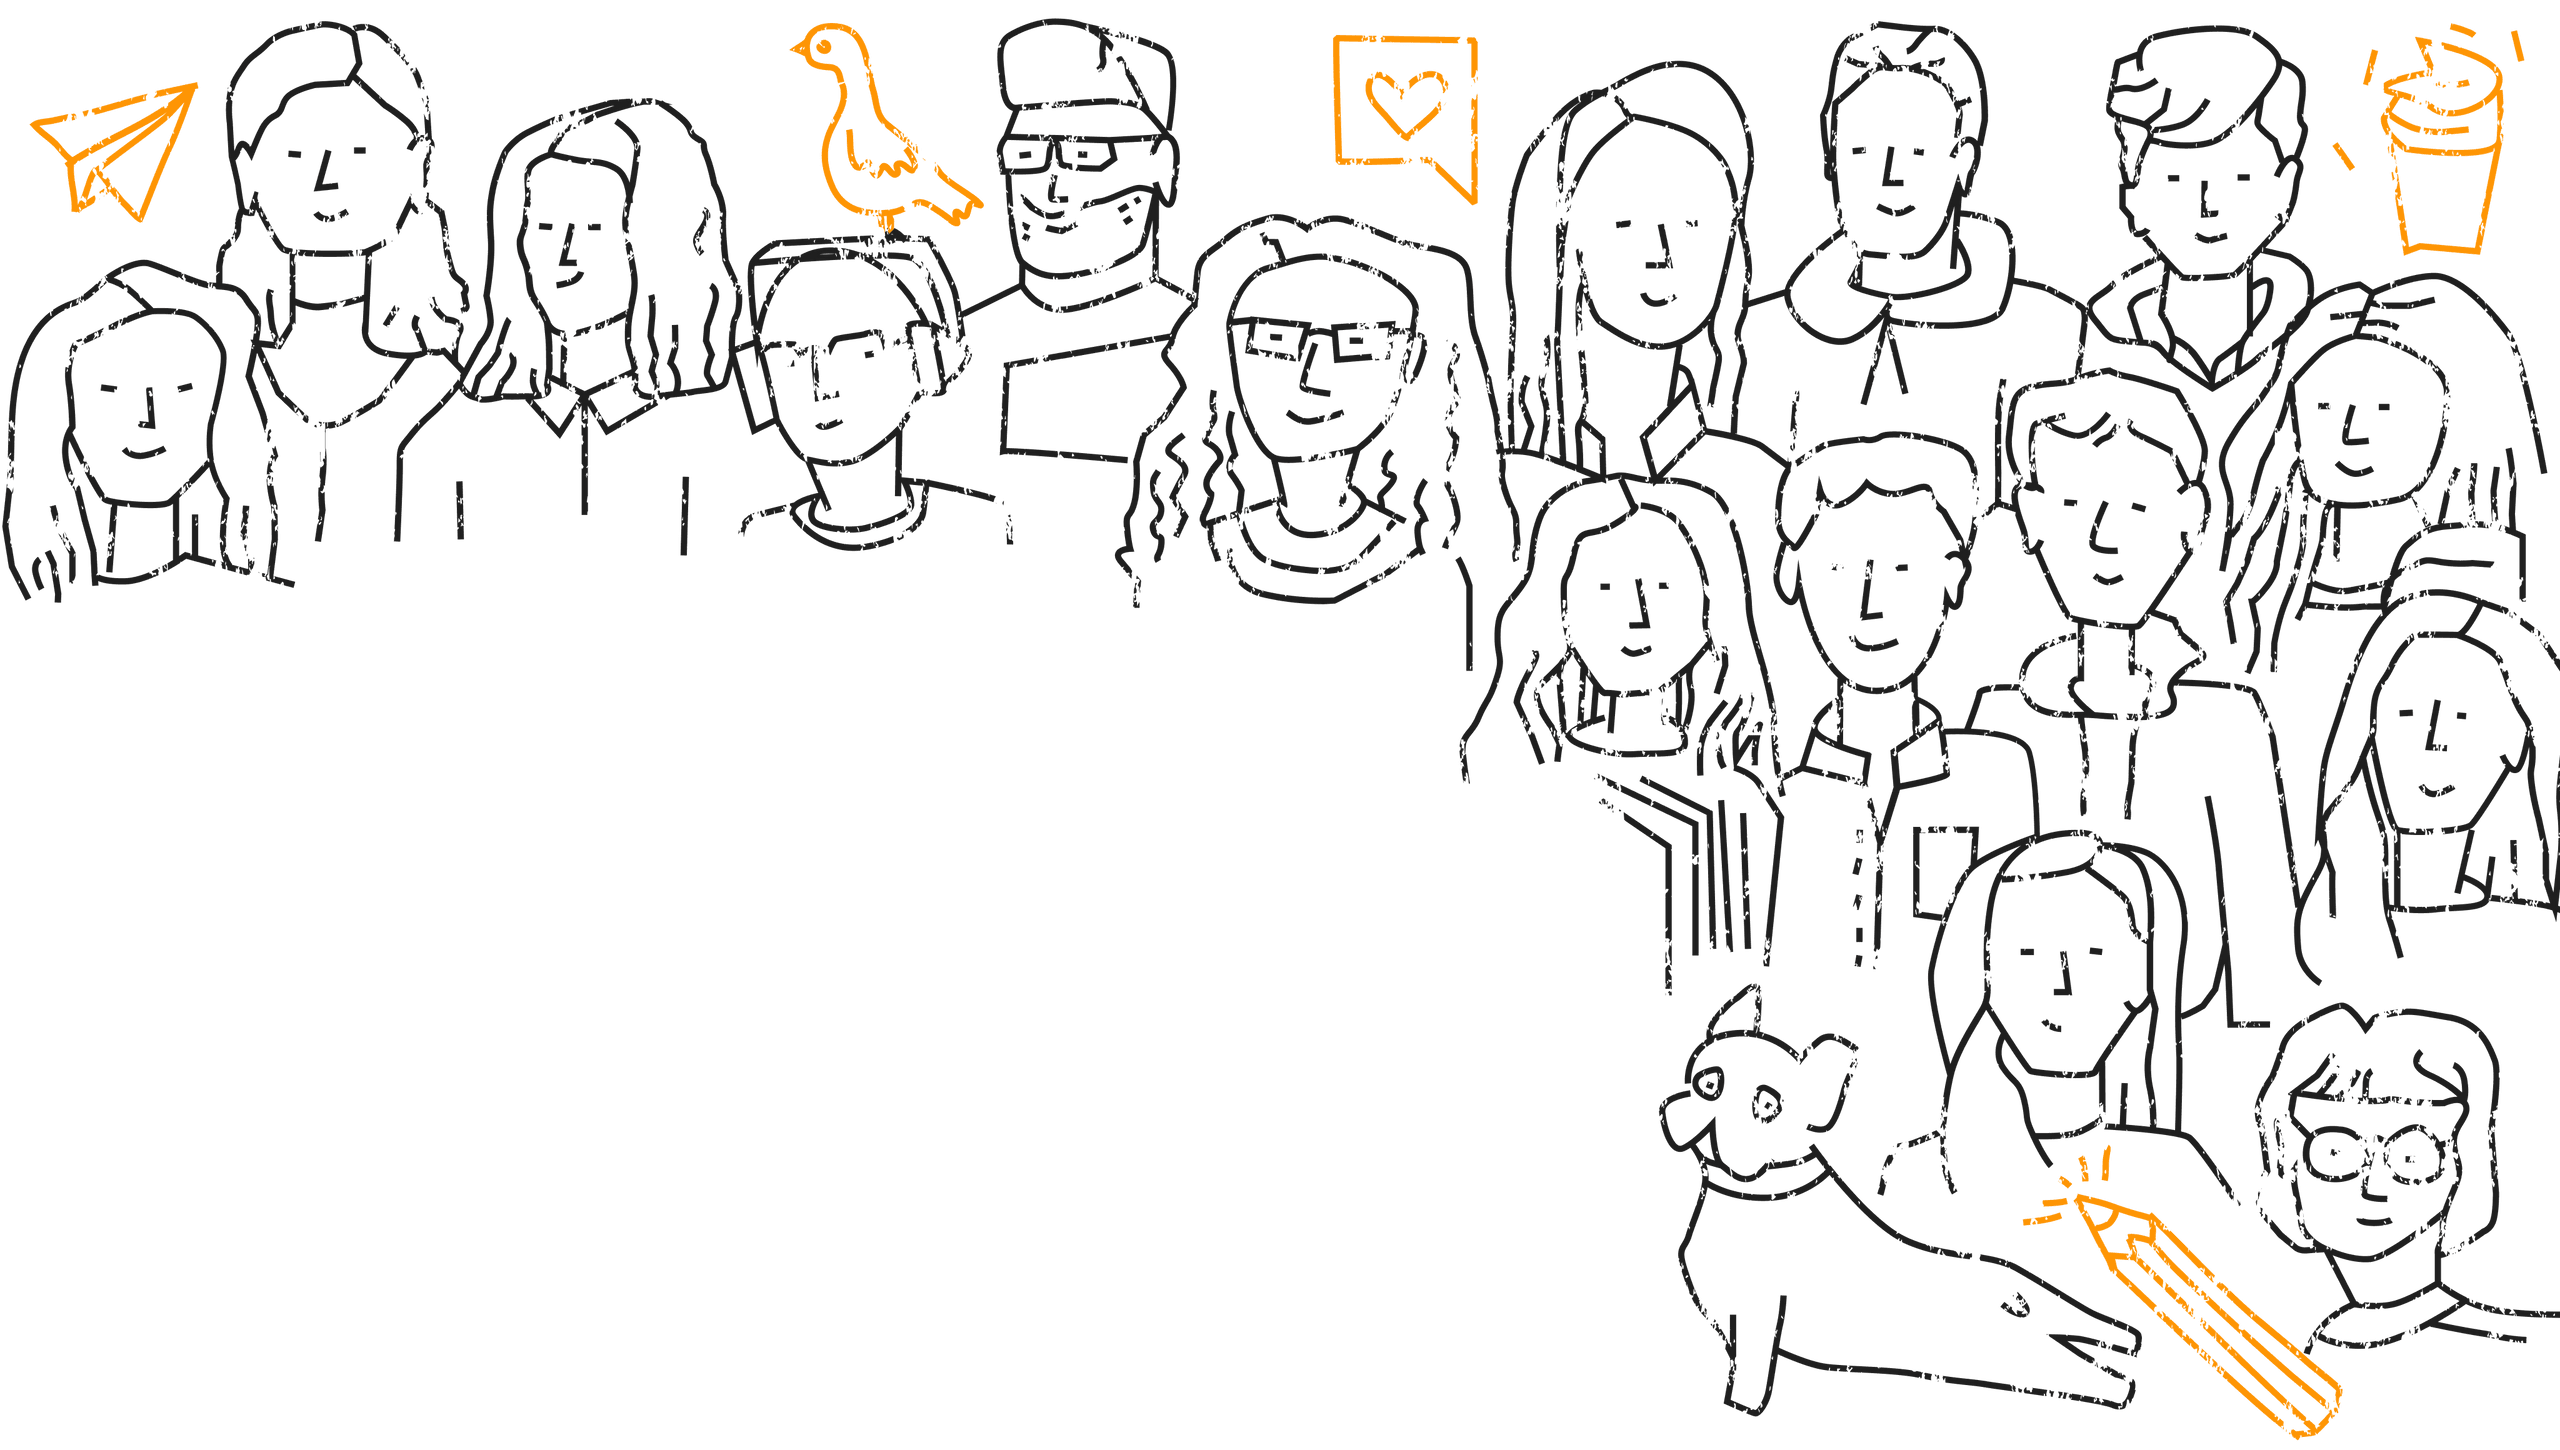 Illustration mit ganz vielen Menschen, einem Hund, ein Papierflieger, einem Vogel, ein Herz ein Kaffee und einem Bleistift